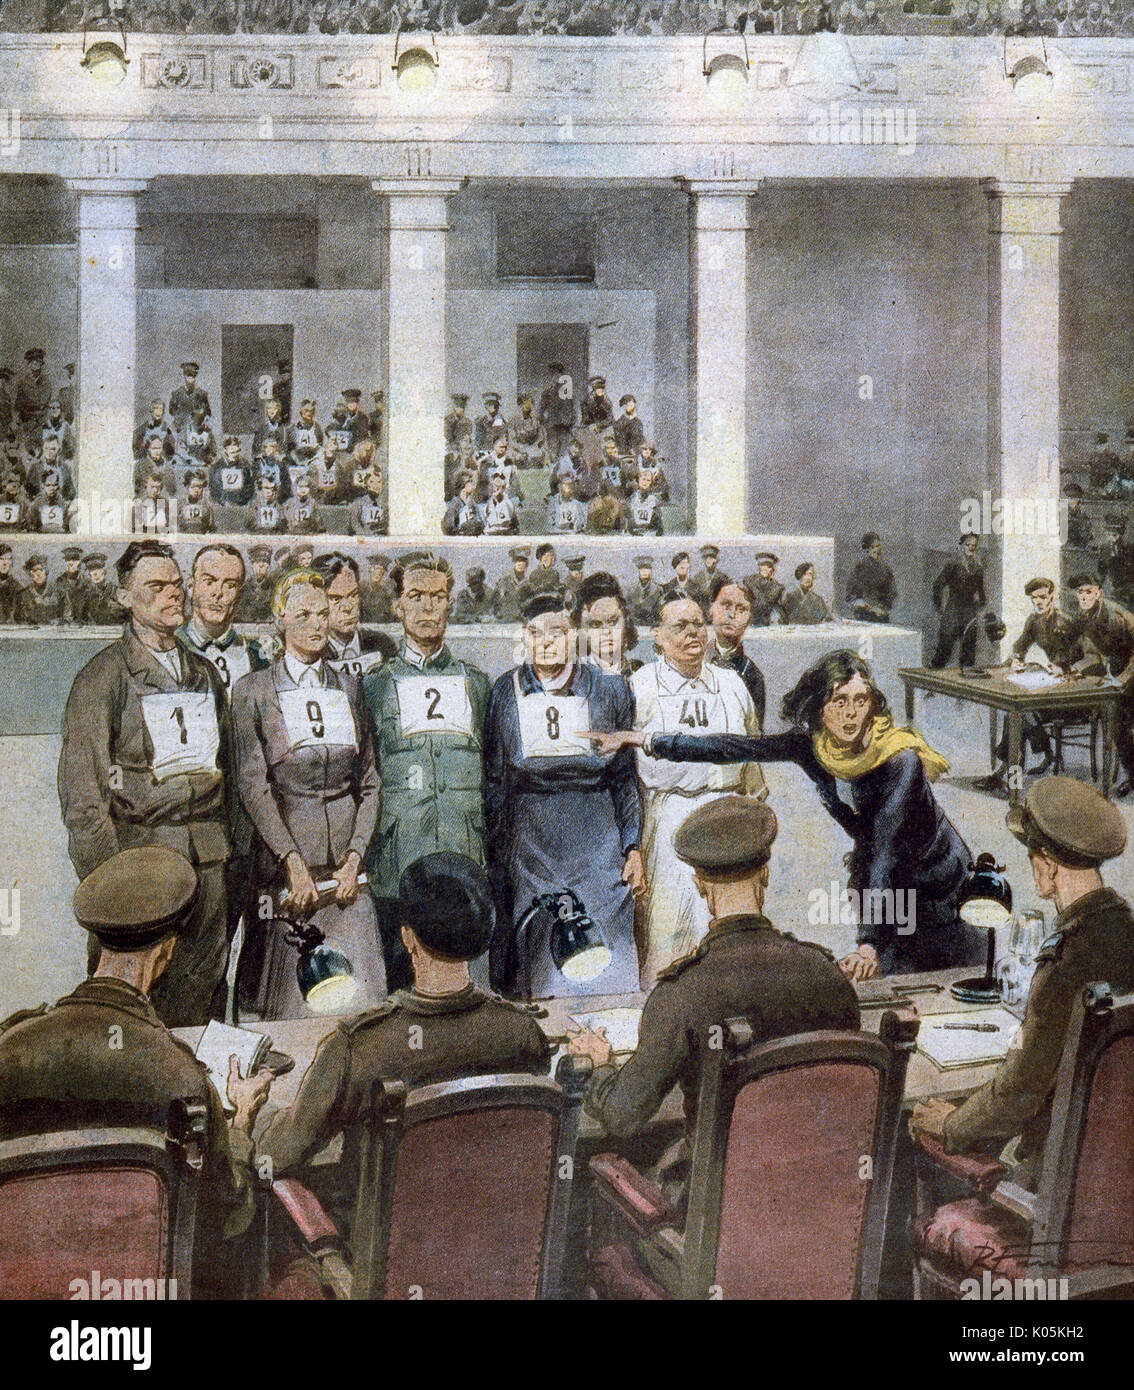 Prove di guerra a Luneburg. Belsen personale Josef Kramer (1) & Irma Greese (9) insieme con gli altri sono identificati. Data: 1945 Foto Stock